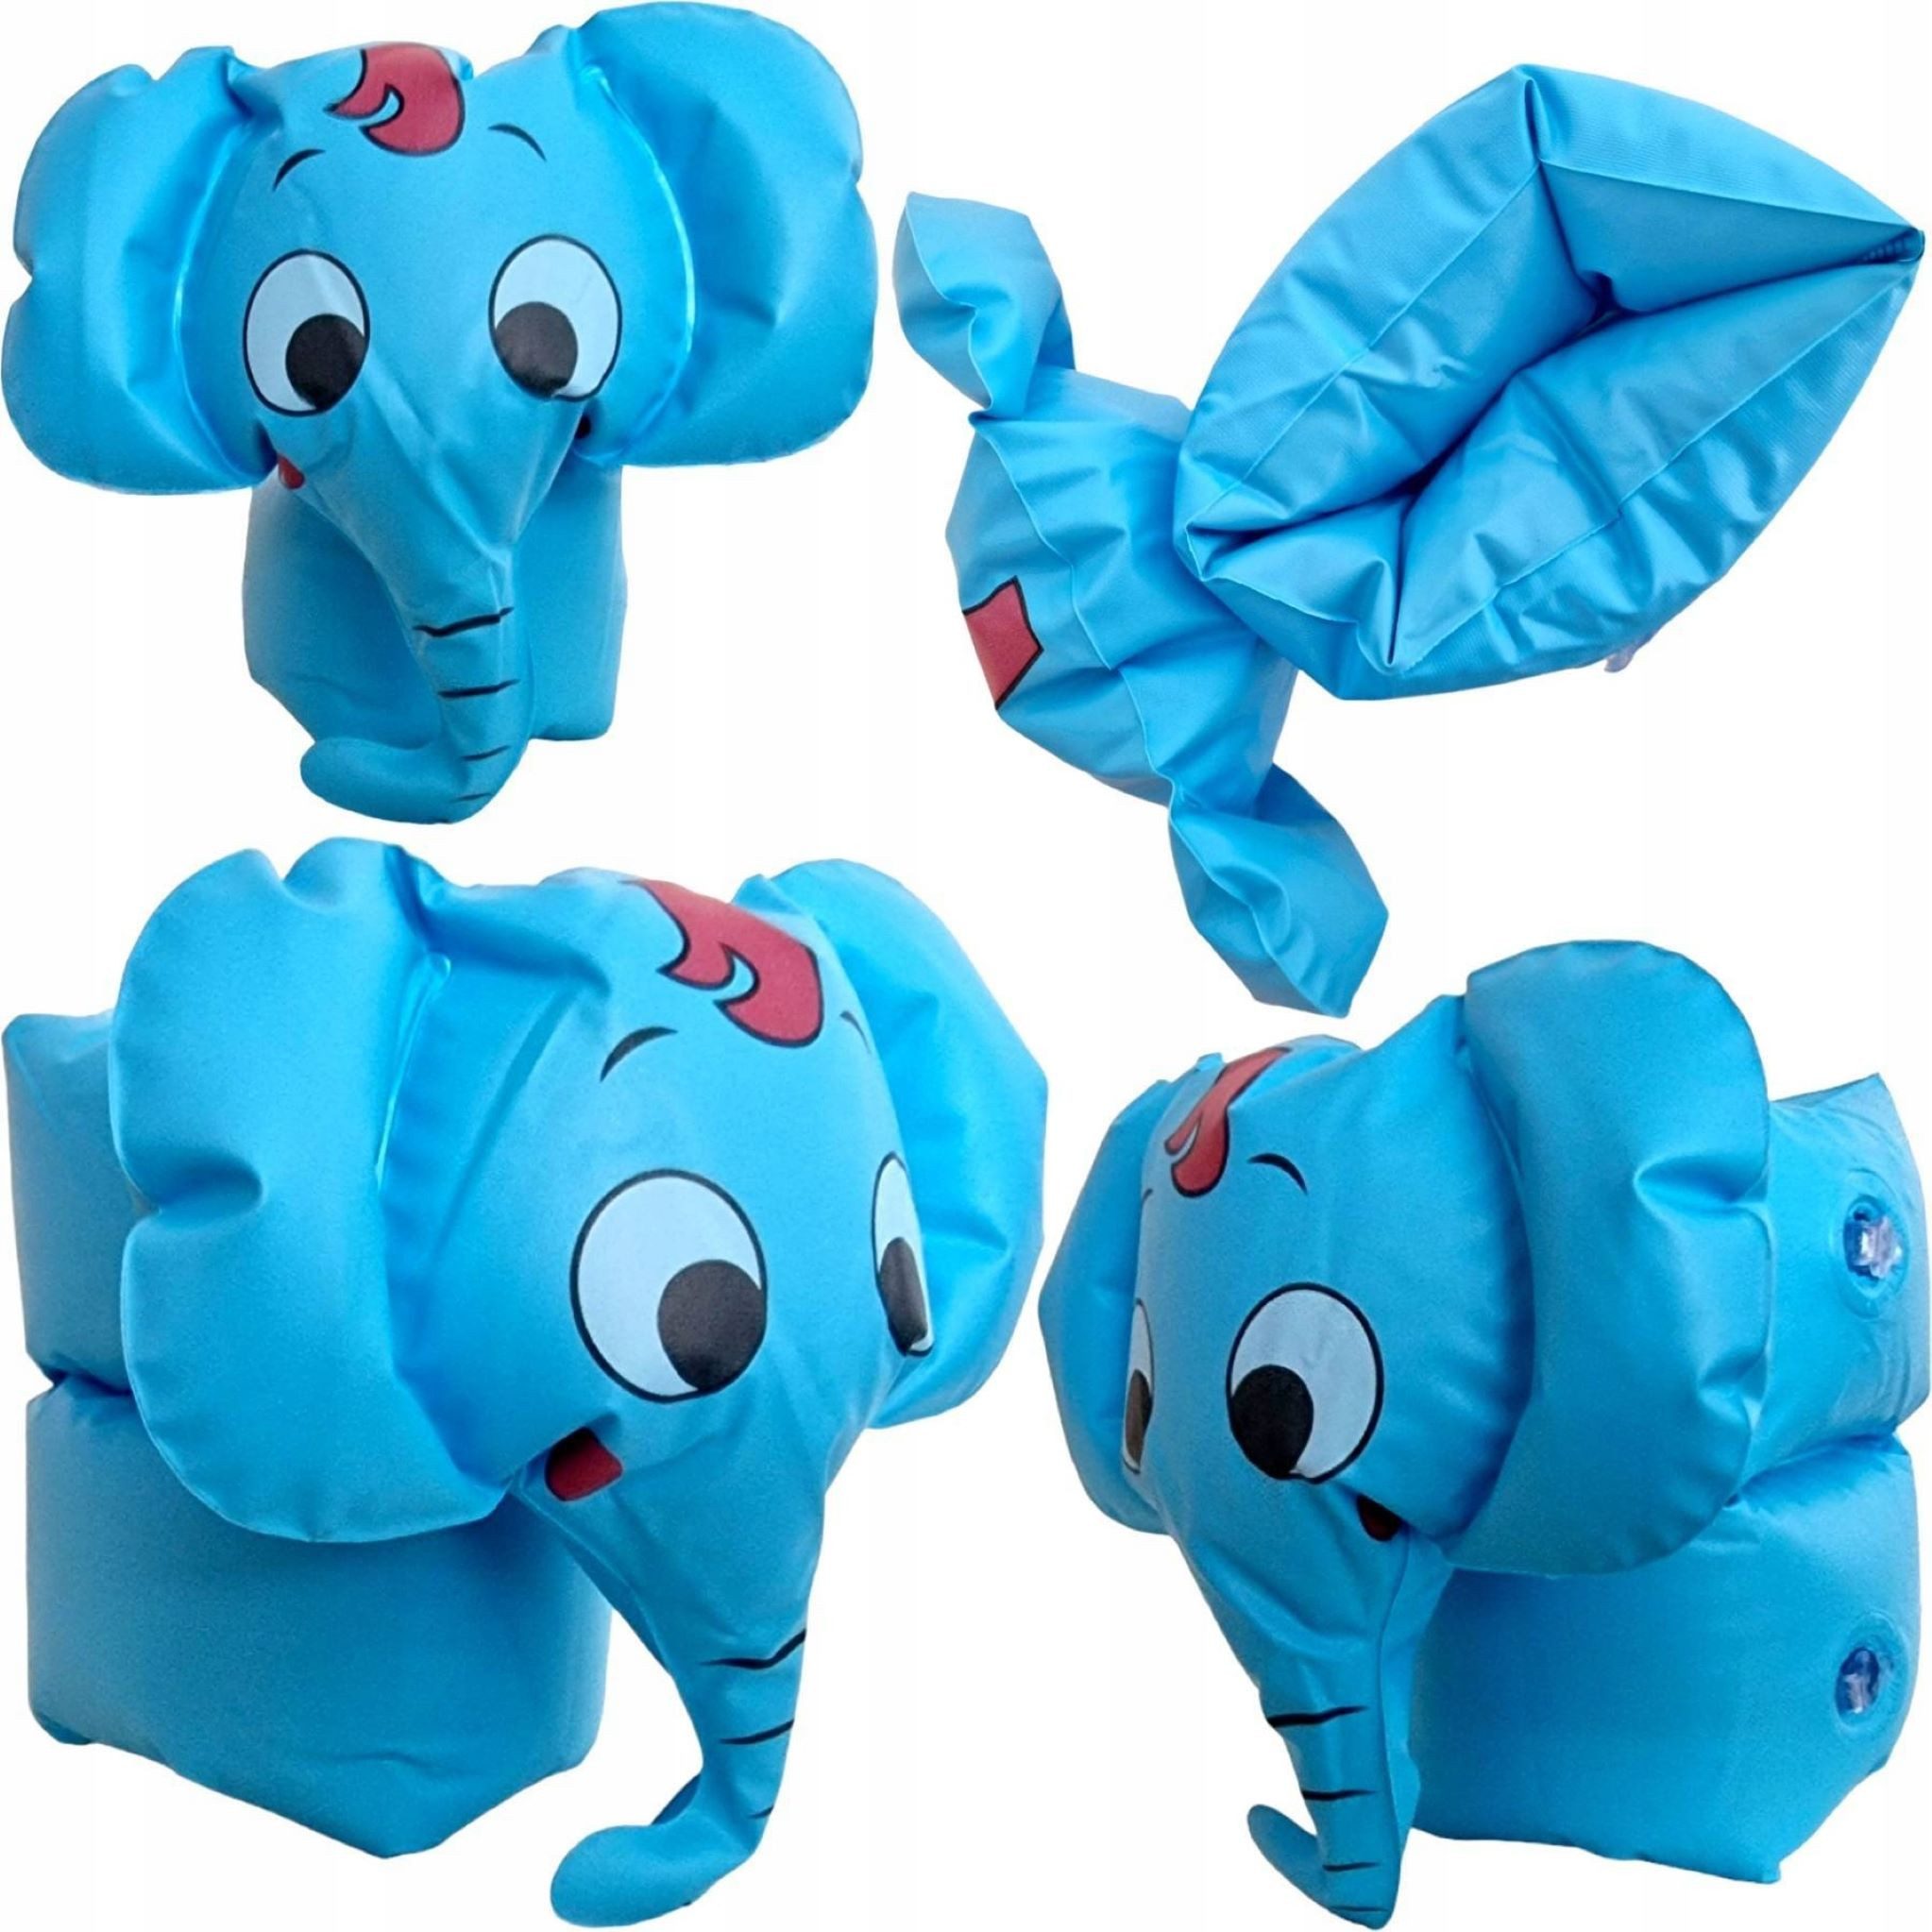 Festivalartikel Schwimmflügel Hochwertige Schwimmflügel für Kinder, Elefant